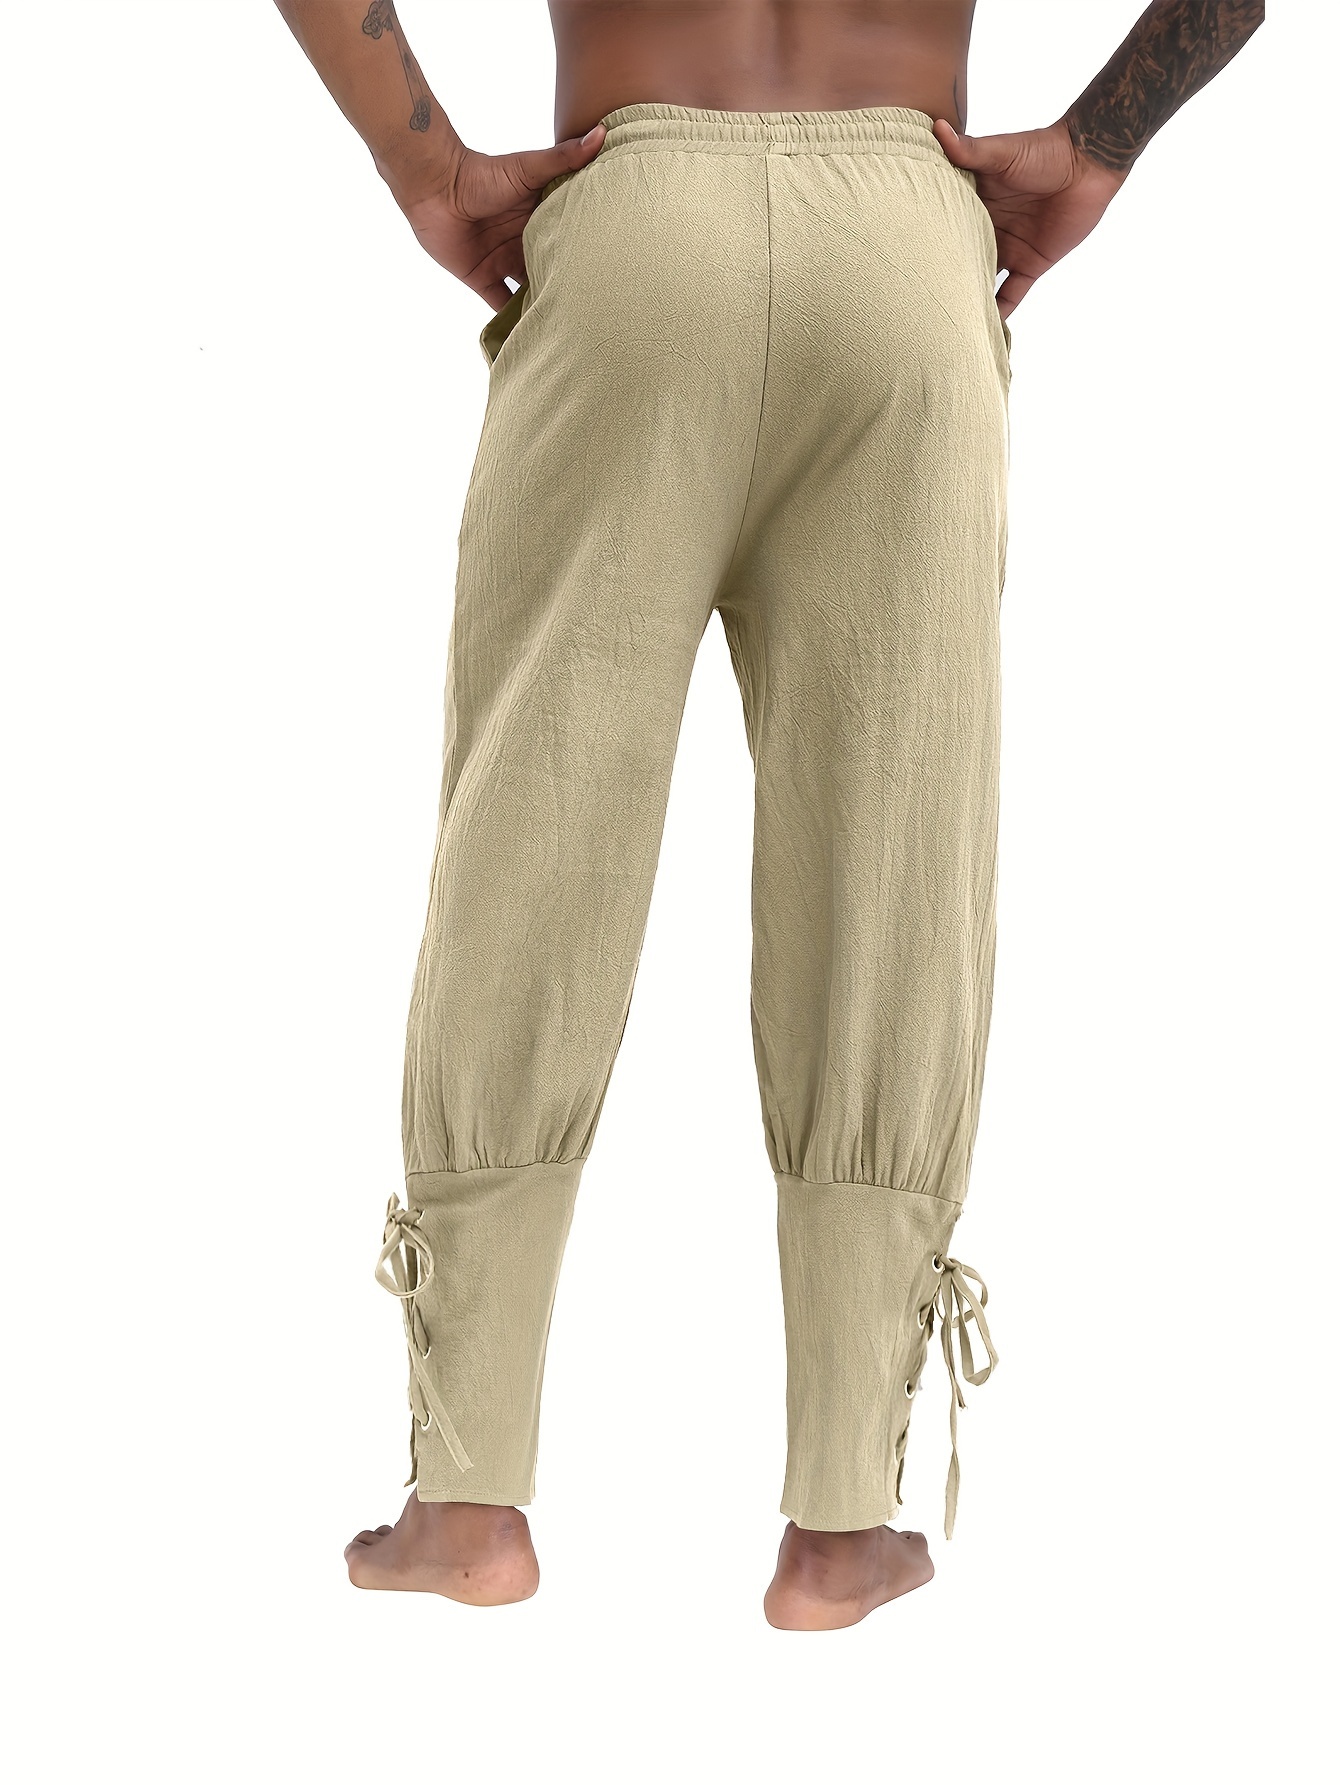 Men's Retro Medieval Renaissance Lace Loose Trousers Pants - Temu Canada